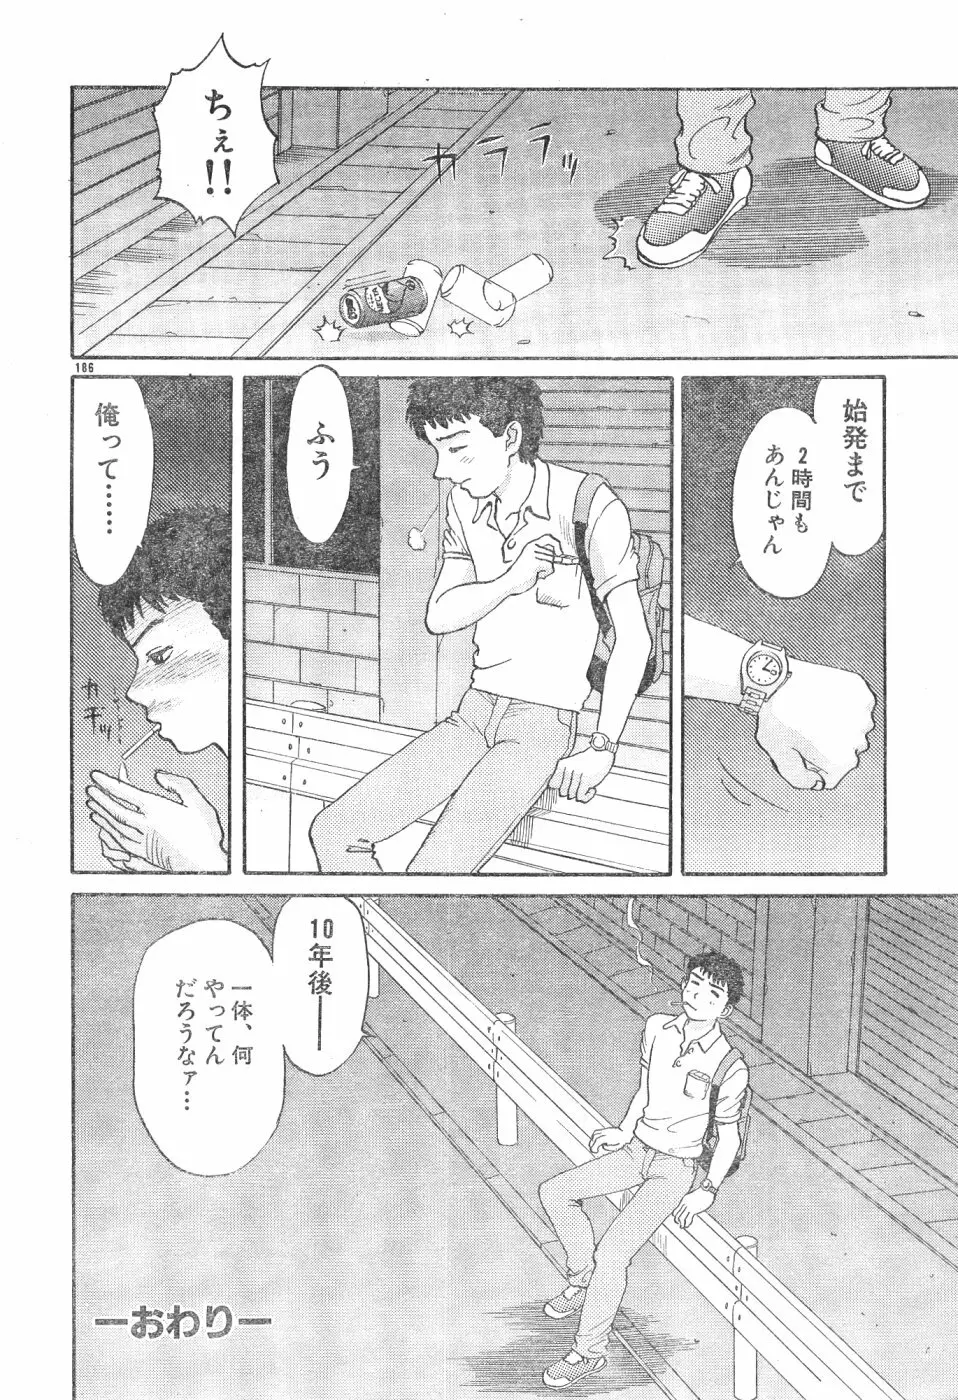 Men’s Dolphin Vol 12 2000-08-01 186ページ